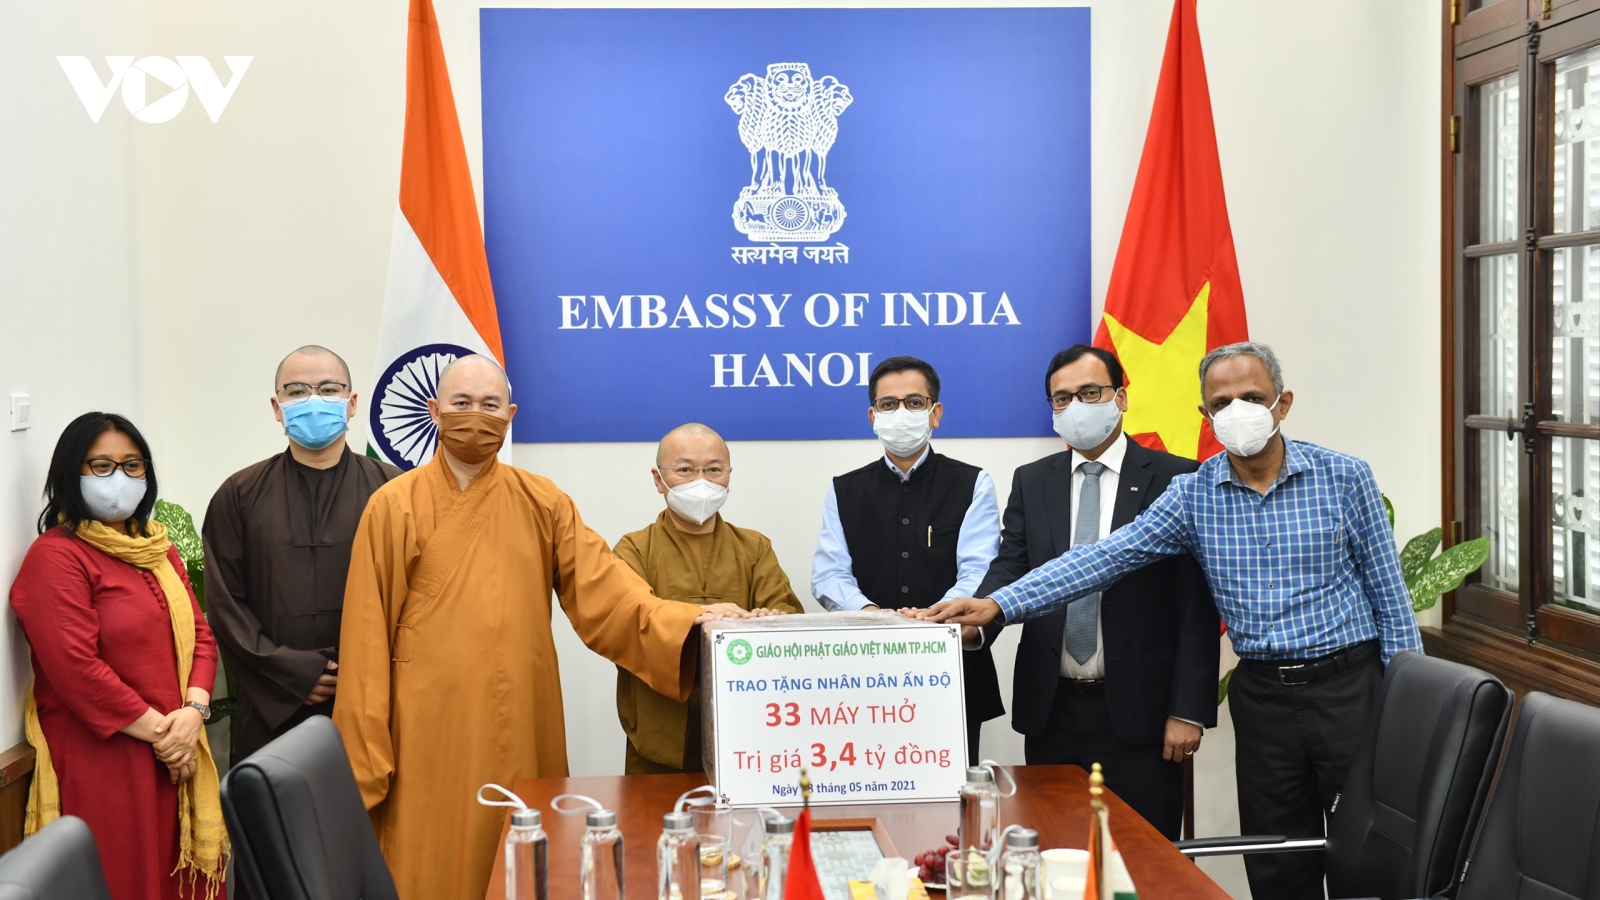 Giáo hội Phật giáo TPHCM trao tặng 33 máy thở trị giá 3,4 tỷ đồng ủng hộ nhân dân Ấn Độ